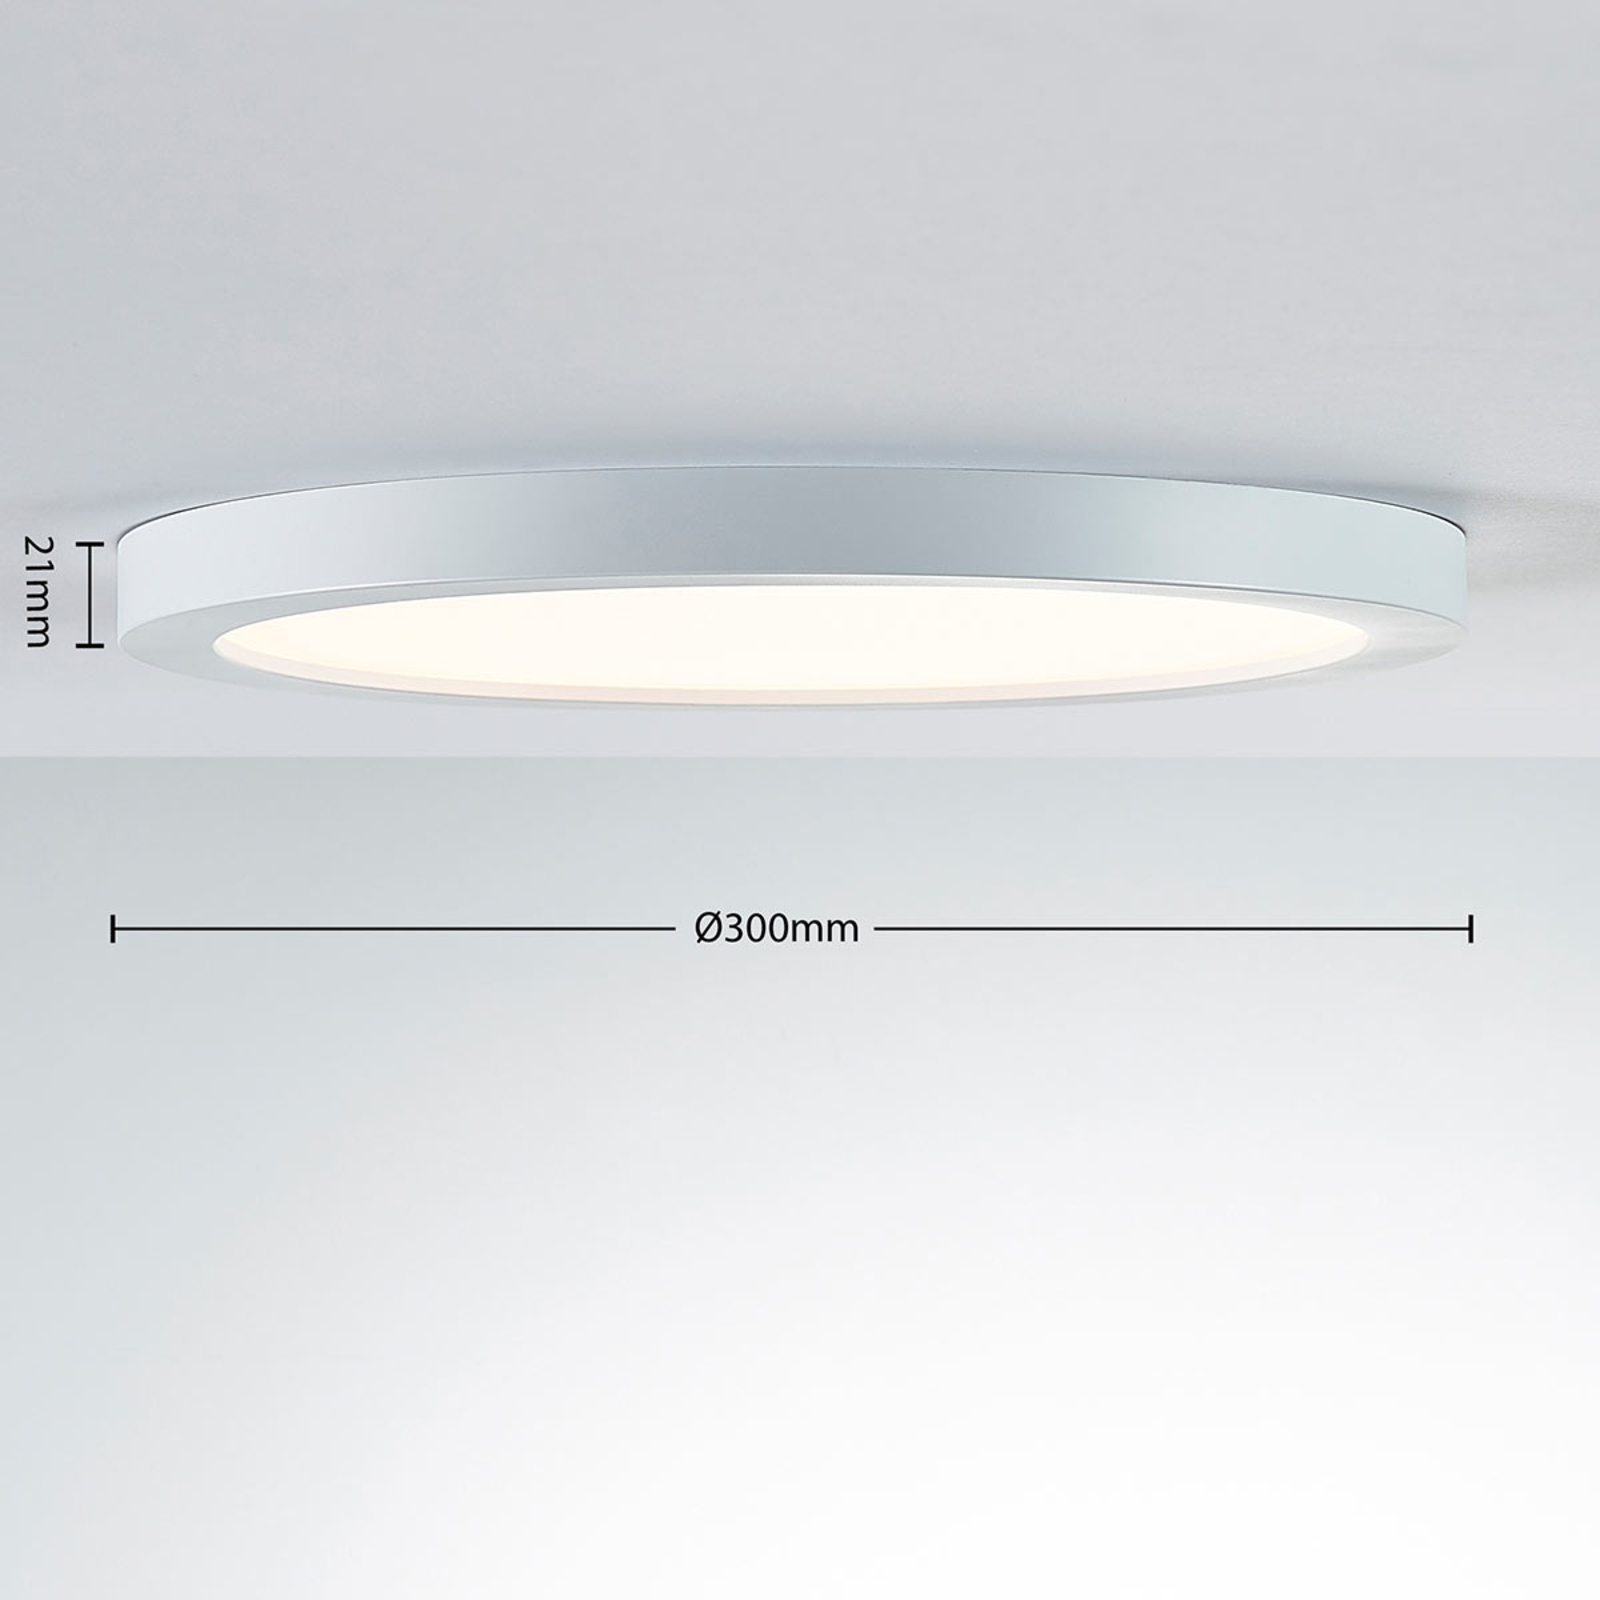 Toepassen Doe het niet bros Dimbare LED plafondlamp Solvie in wit | Lampen24.nl